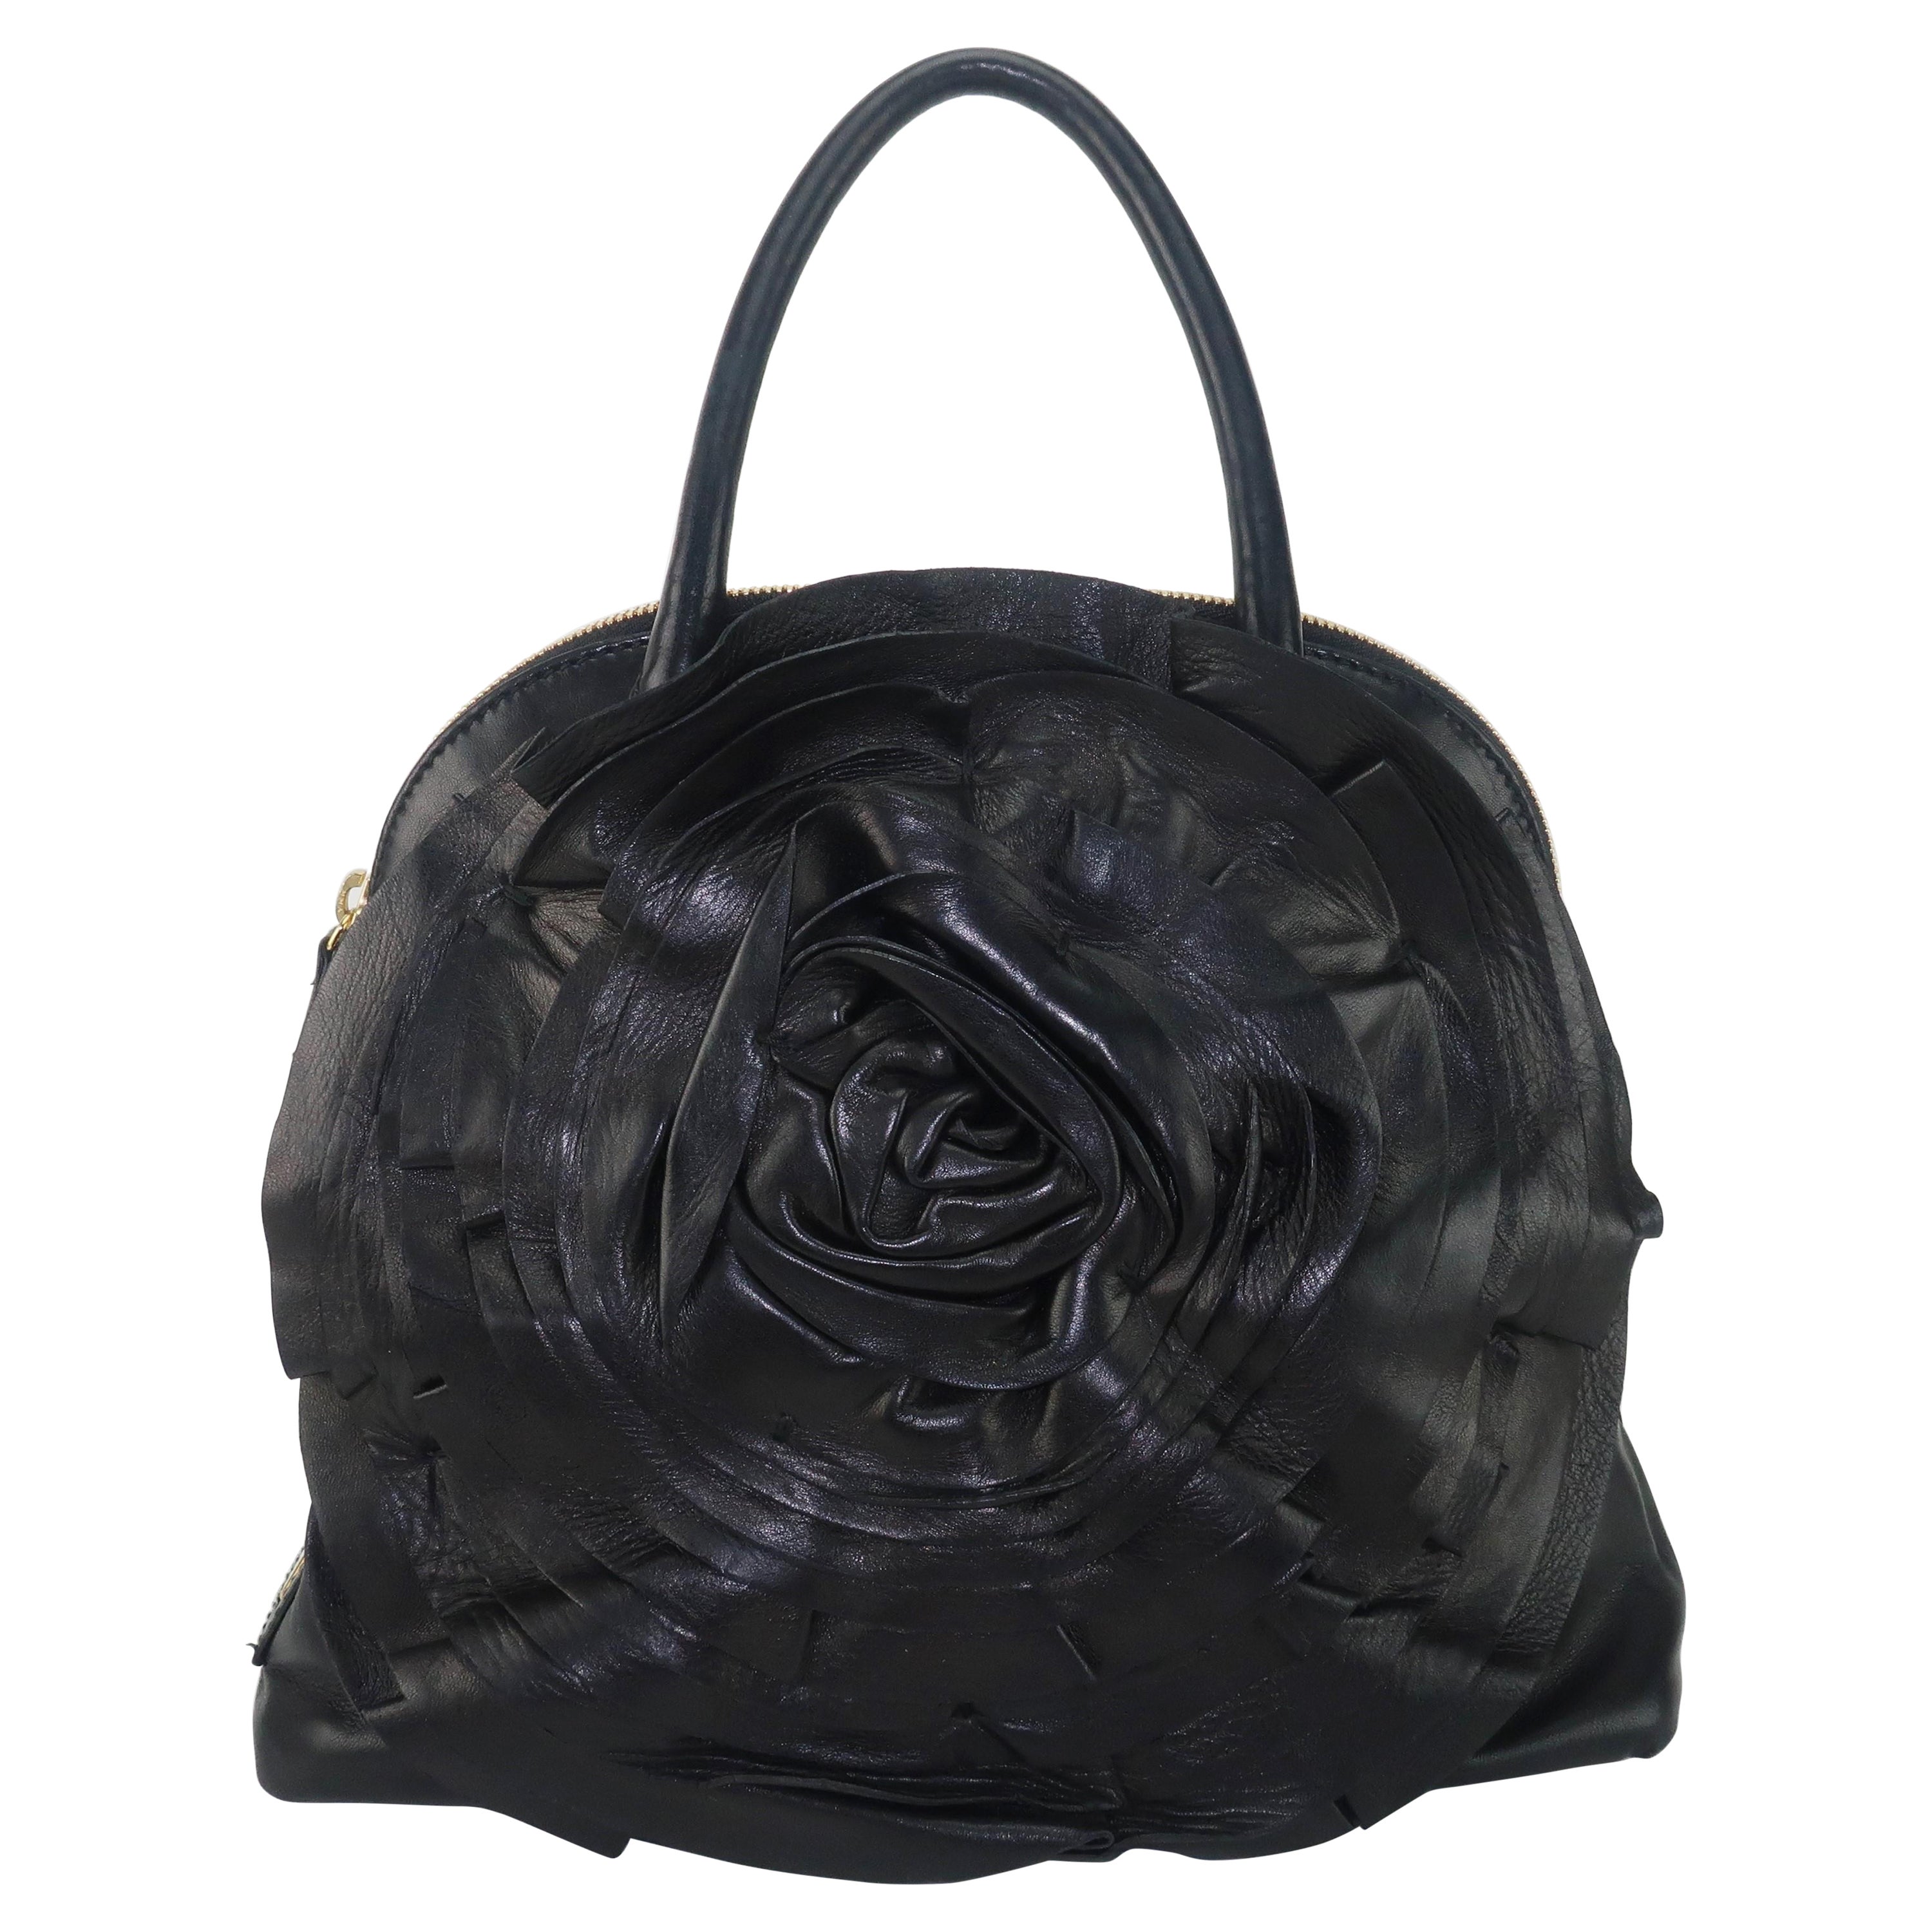 Valentino Garavani Black Leather Petale Dome Handbag